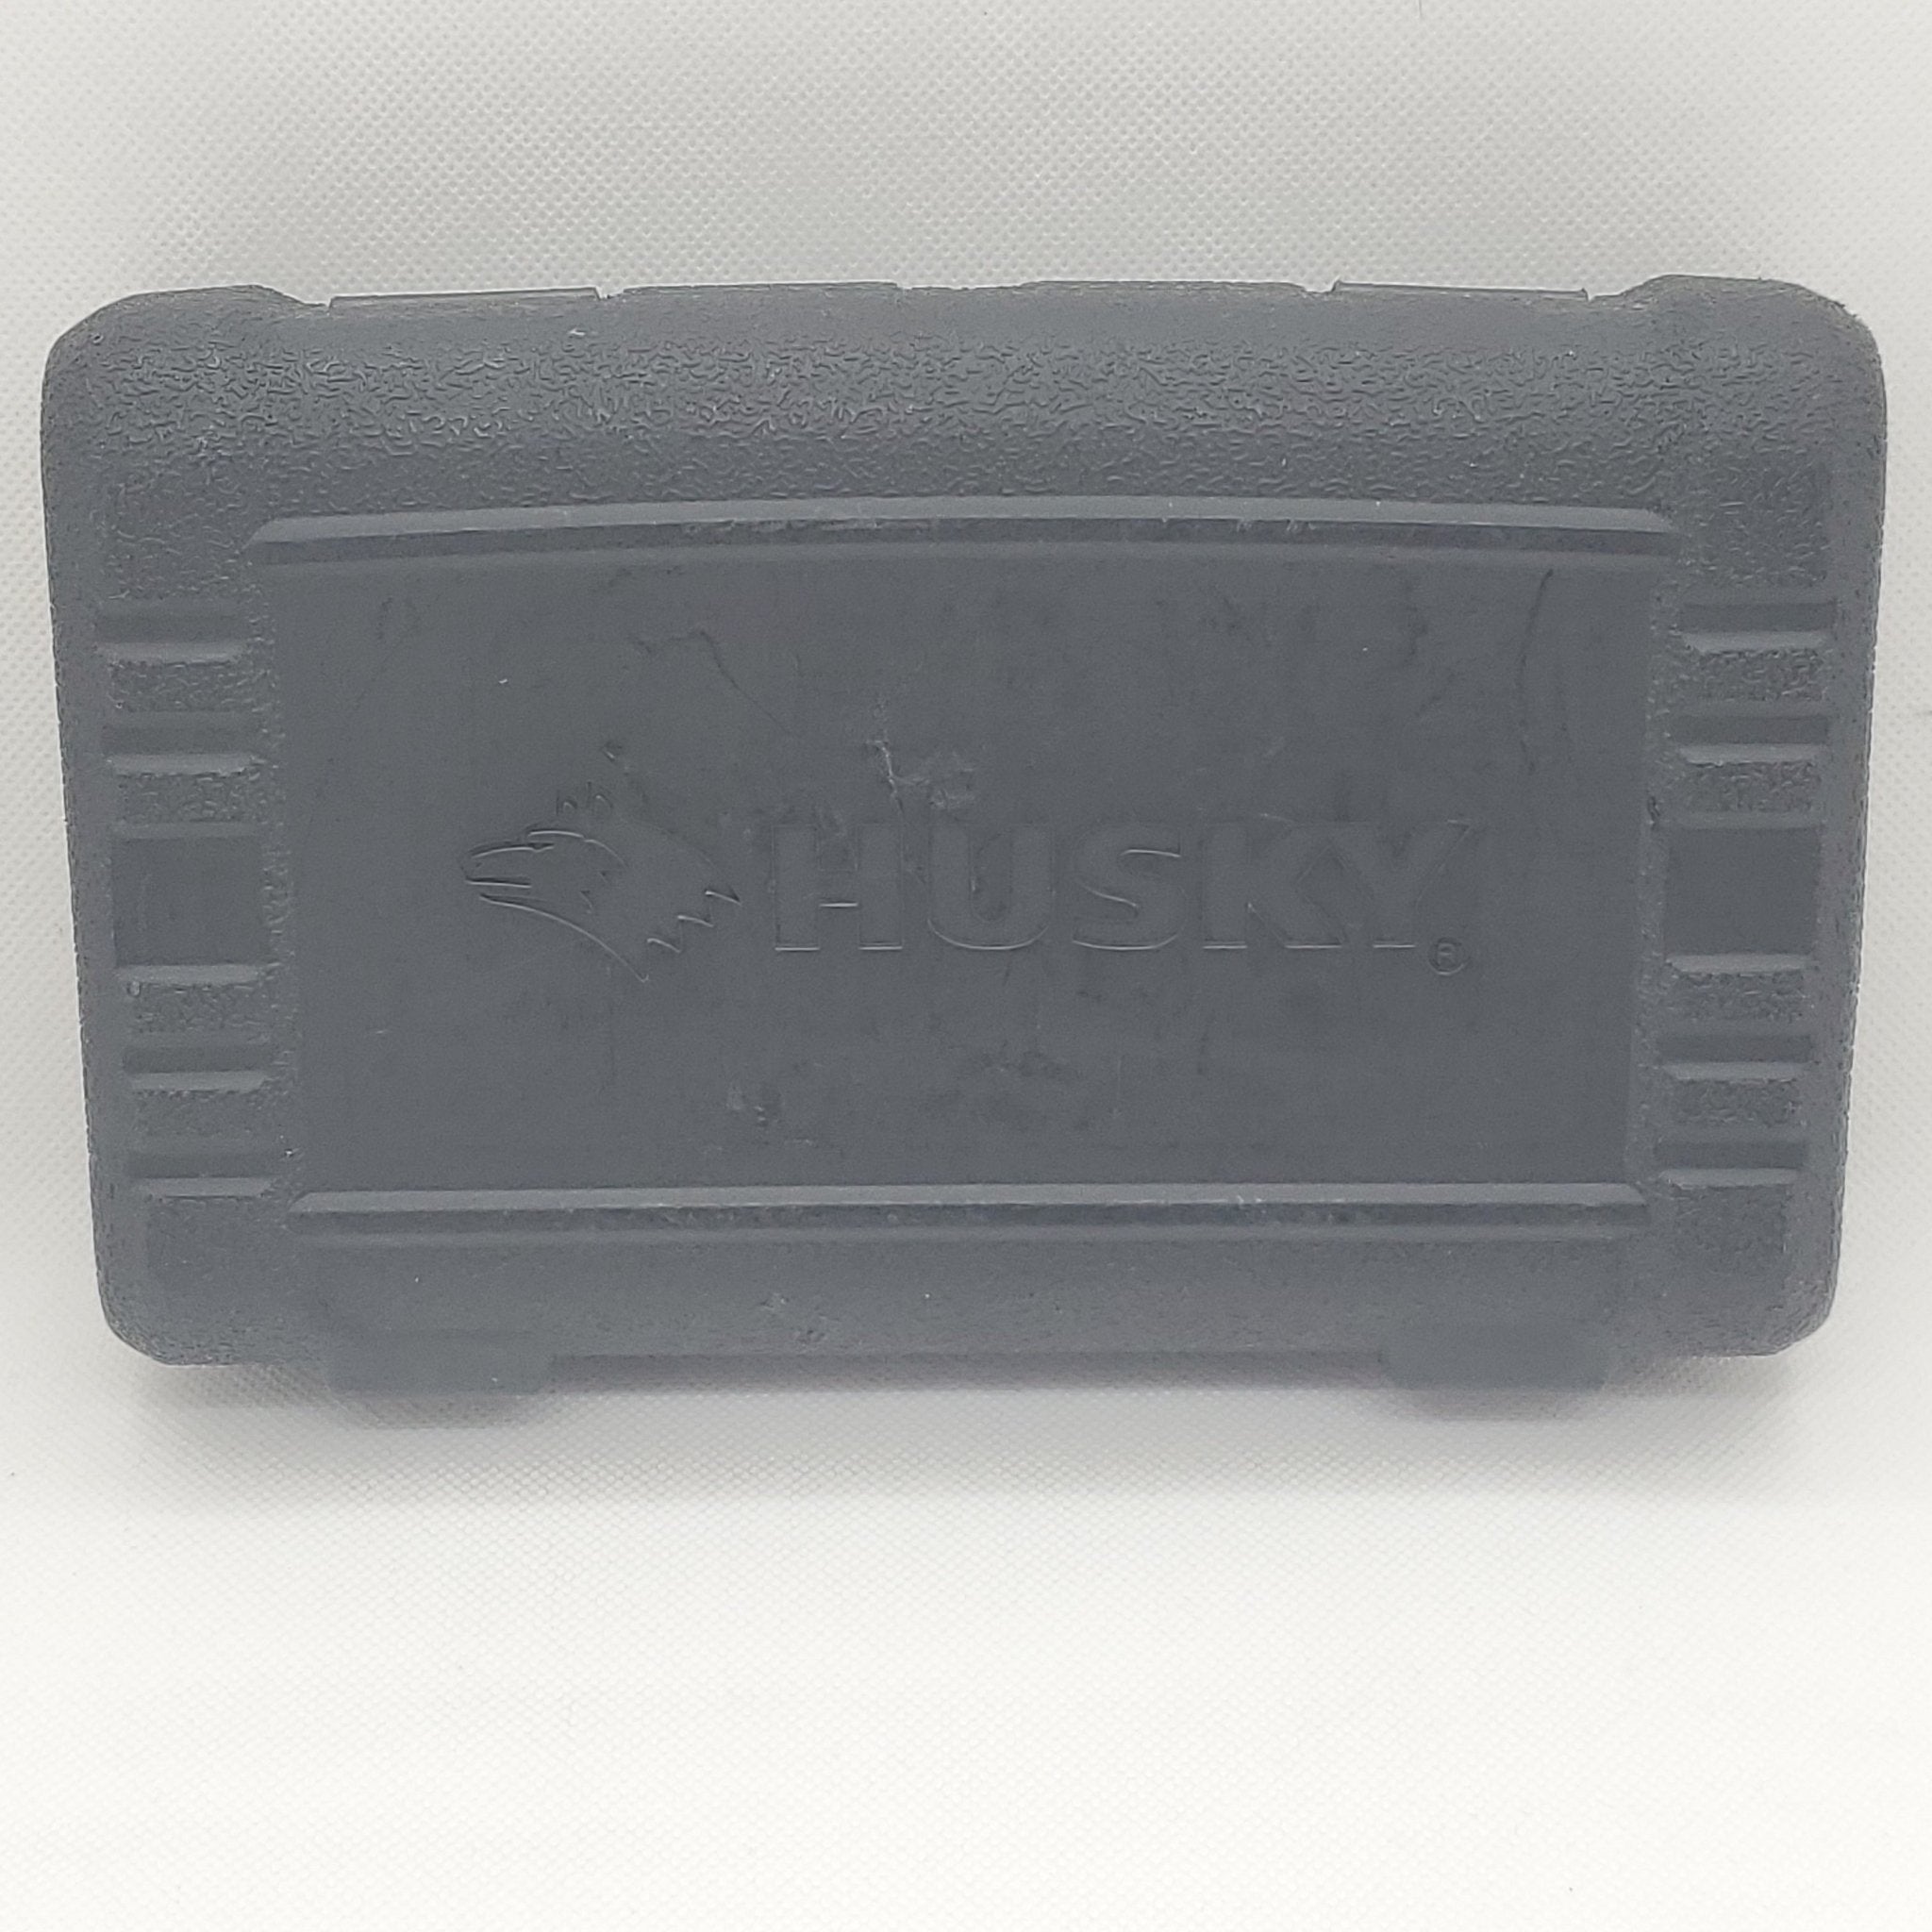 Husky Ratchet Socket Set - 1/4 in. Drive - Bargainwizz